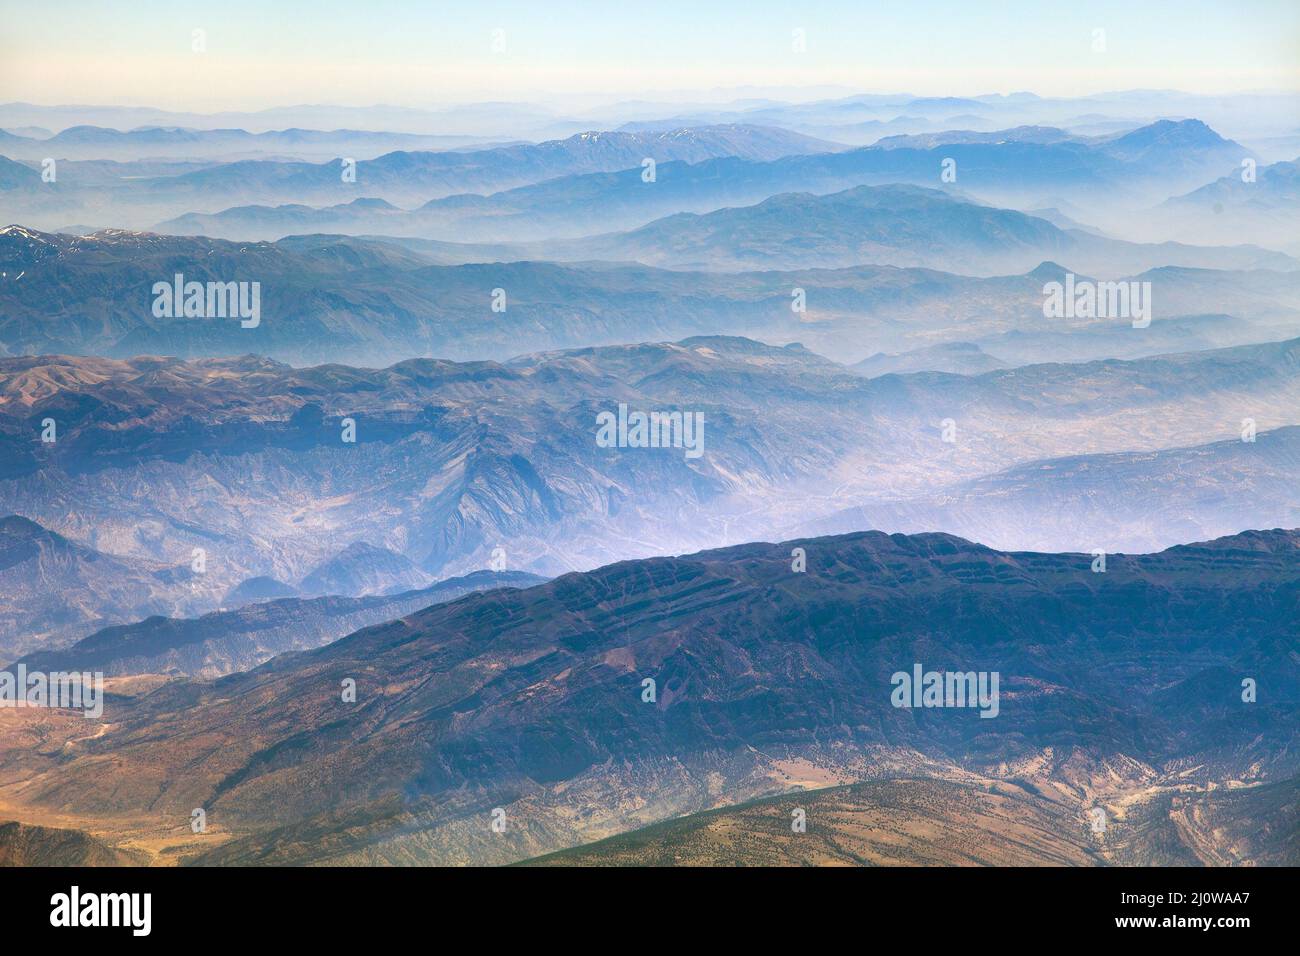 Mountain ridges, aerial view, Iranian mountains Stock Photo